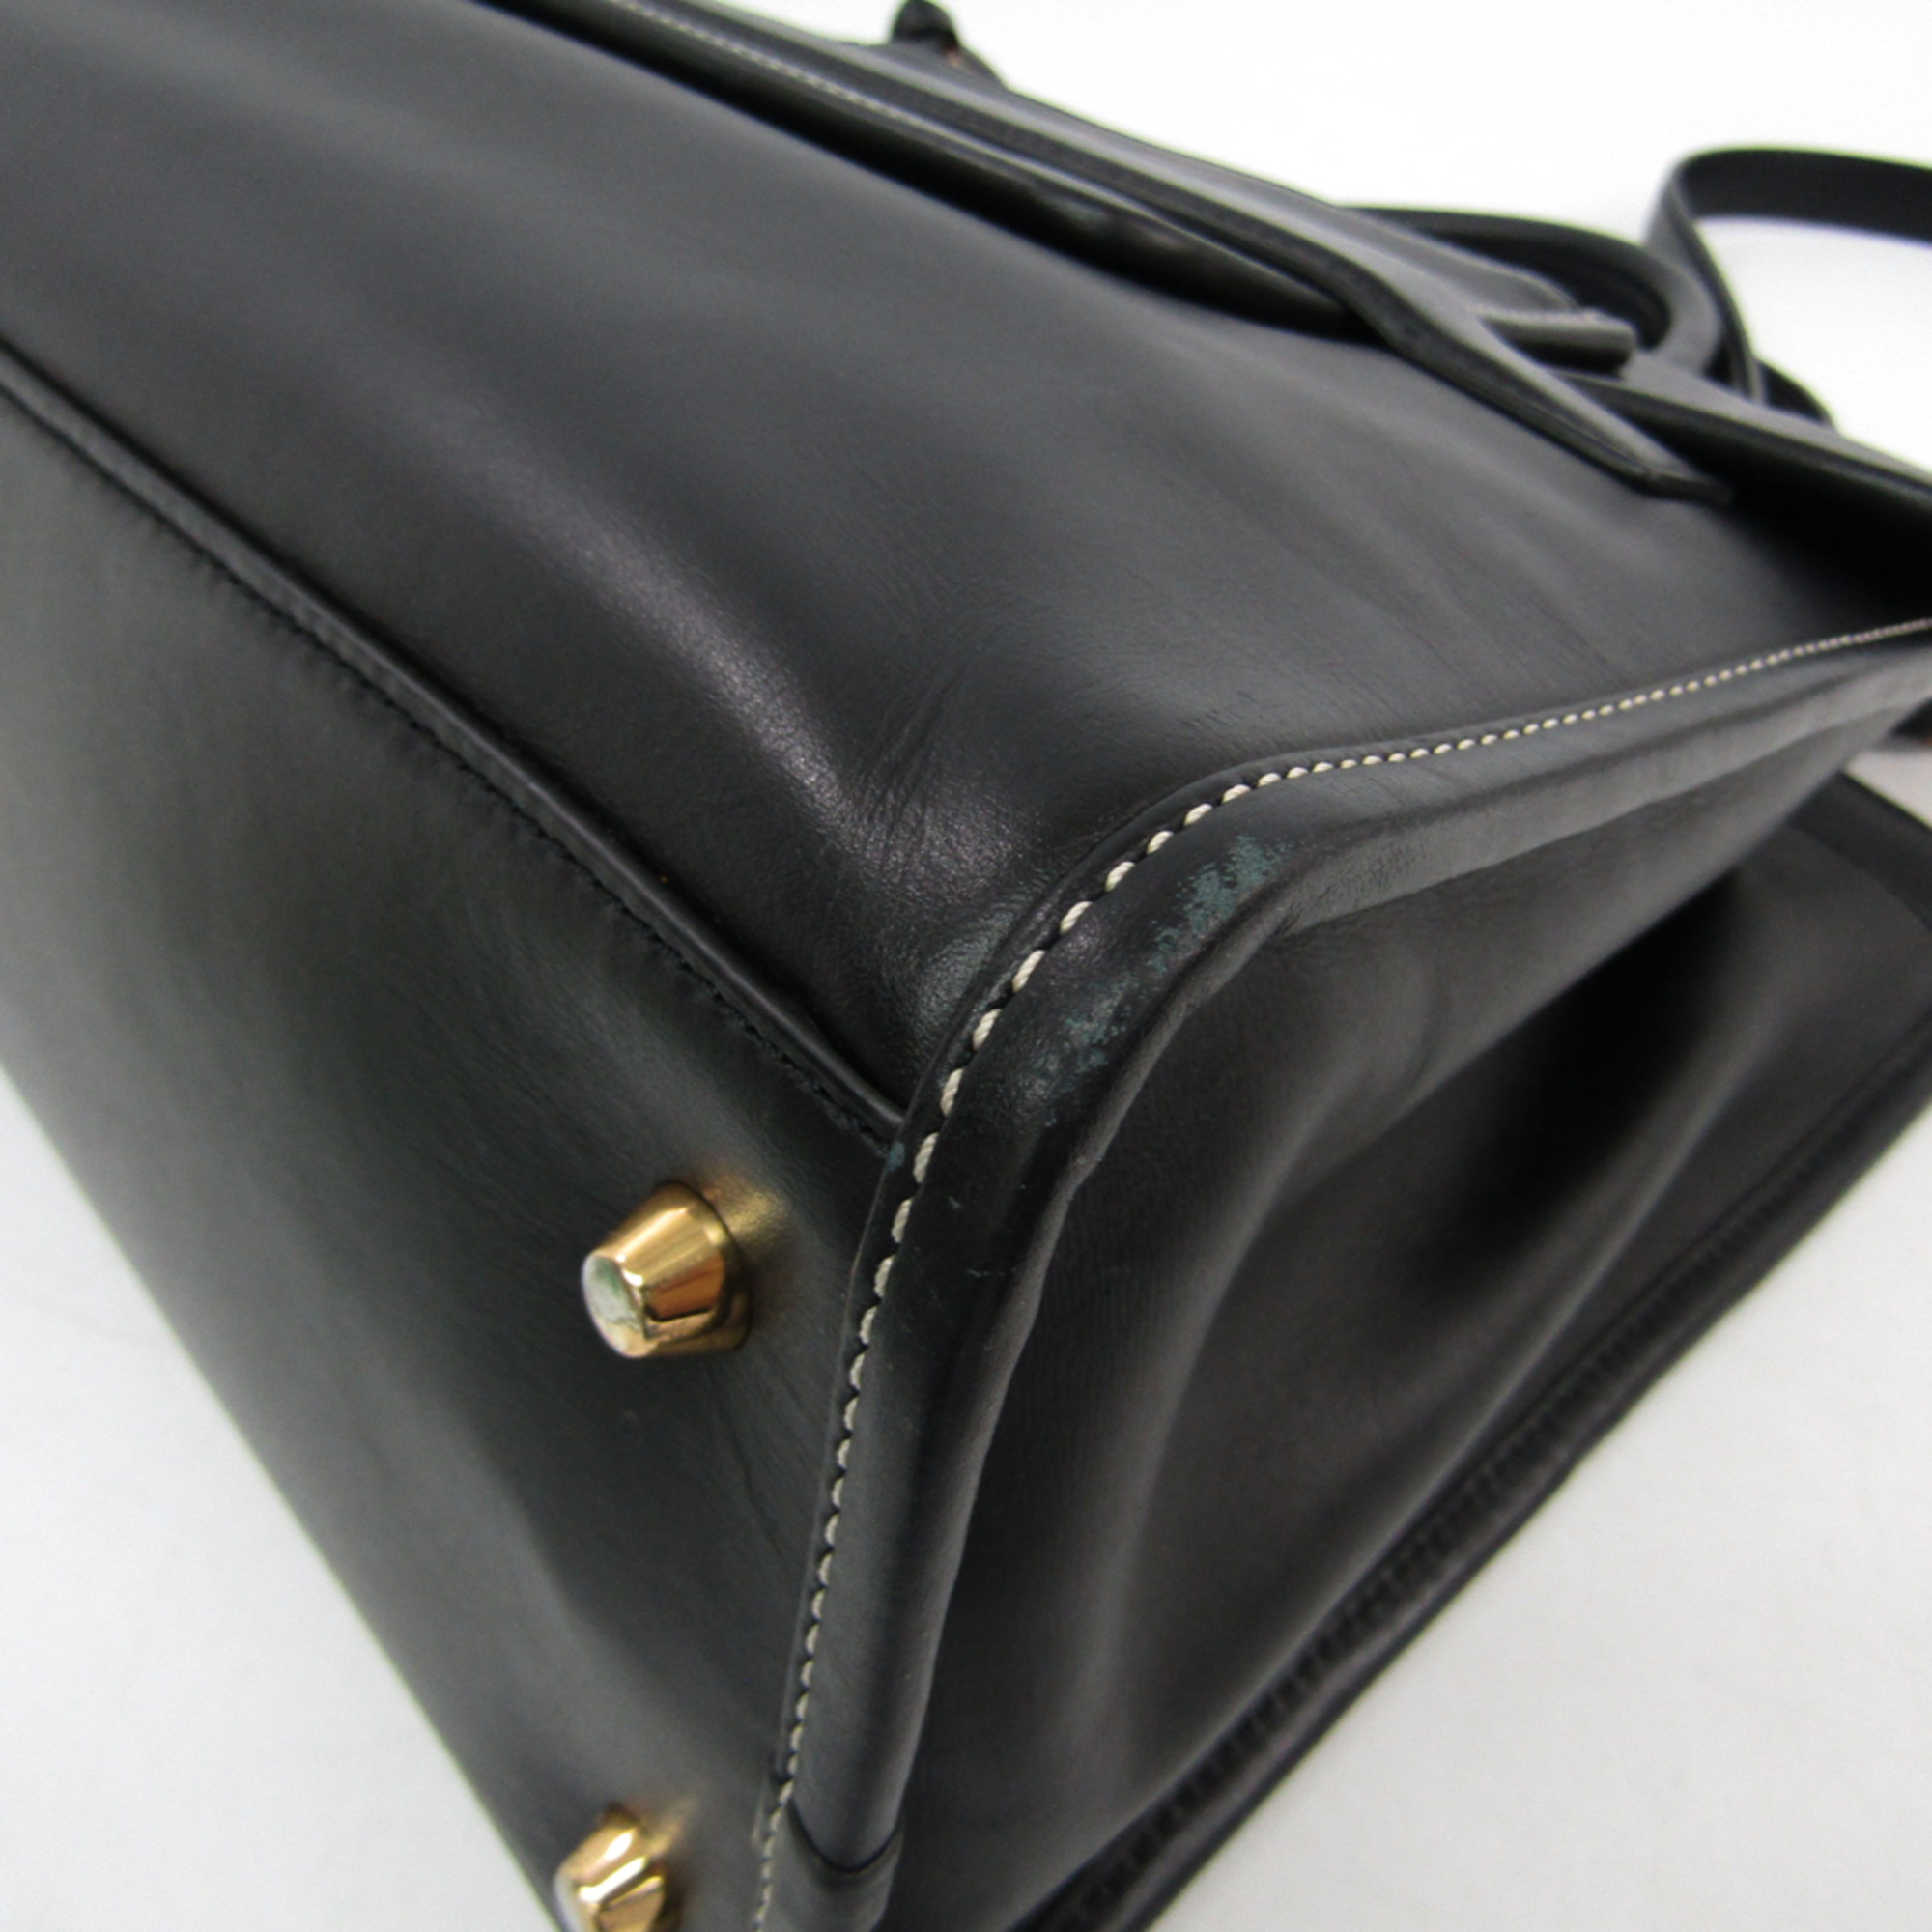 Marc Jacobs Madison NS M0008141 Women's Leather Handbag,Shoulder Bag Black